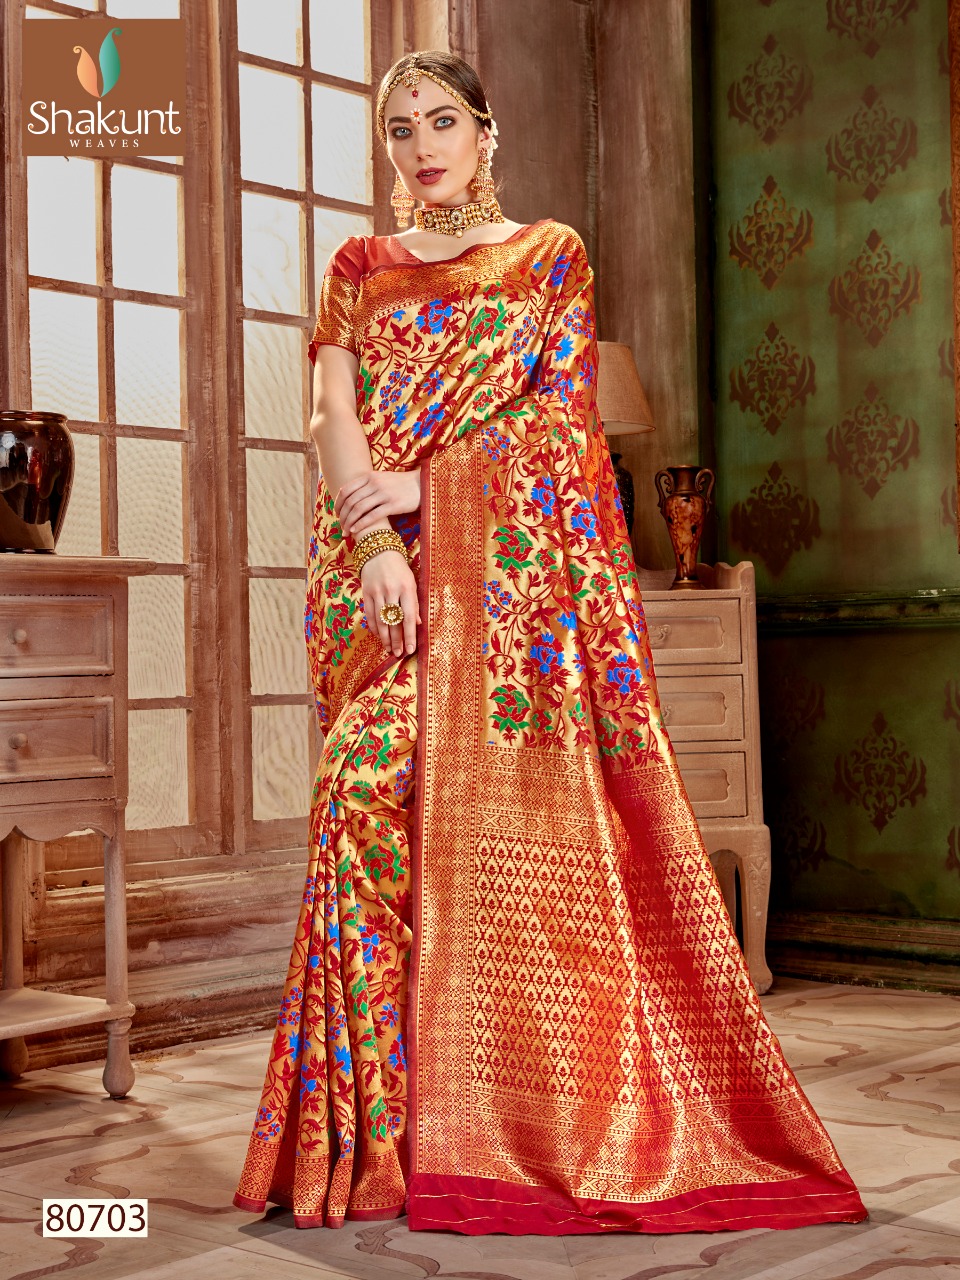 Shakunt weaves yogini astonishing style beautifully designed Sarees